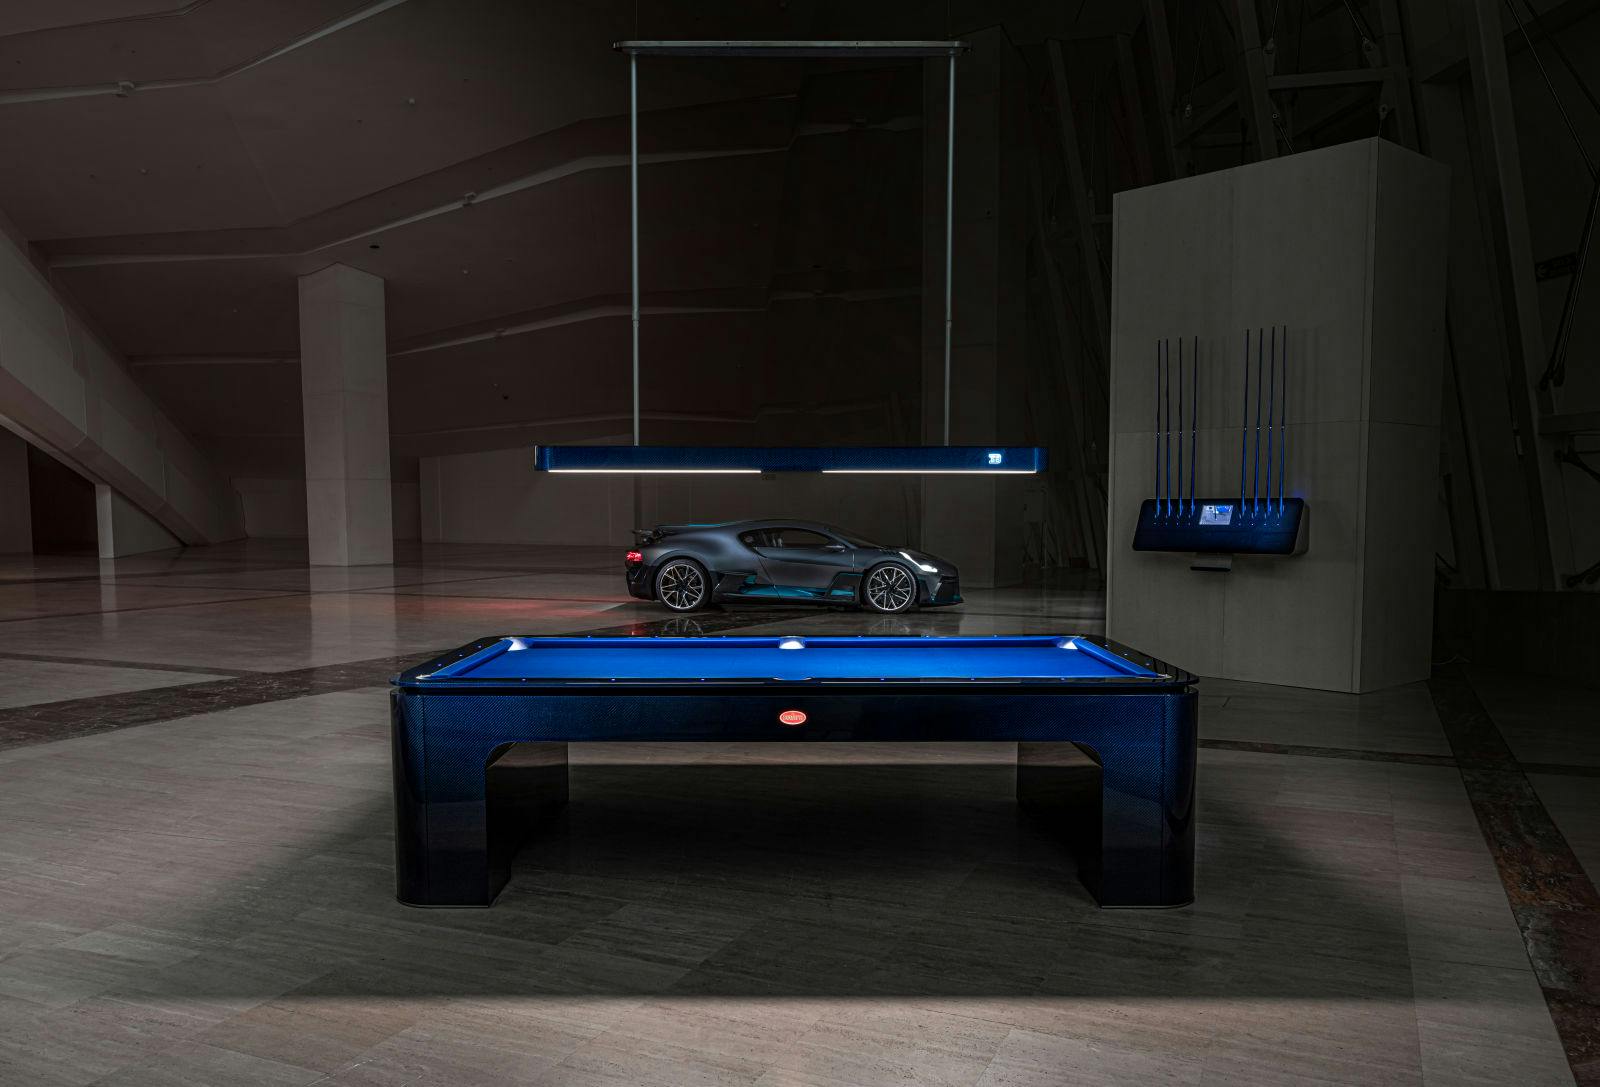 Le billard Bugatti - une véritable incarnation de la marque de luxe française

